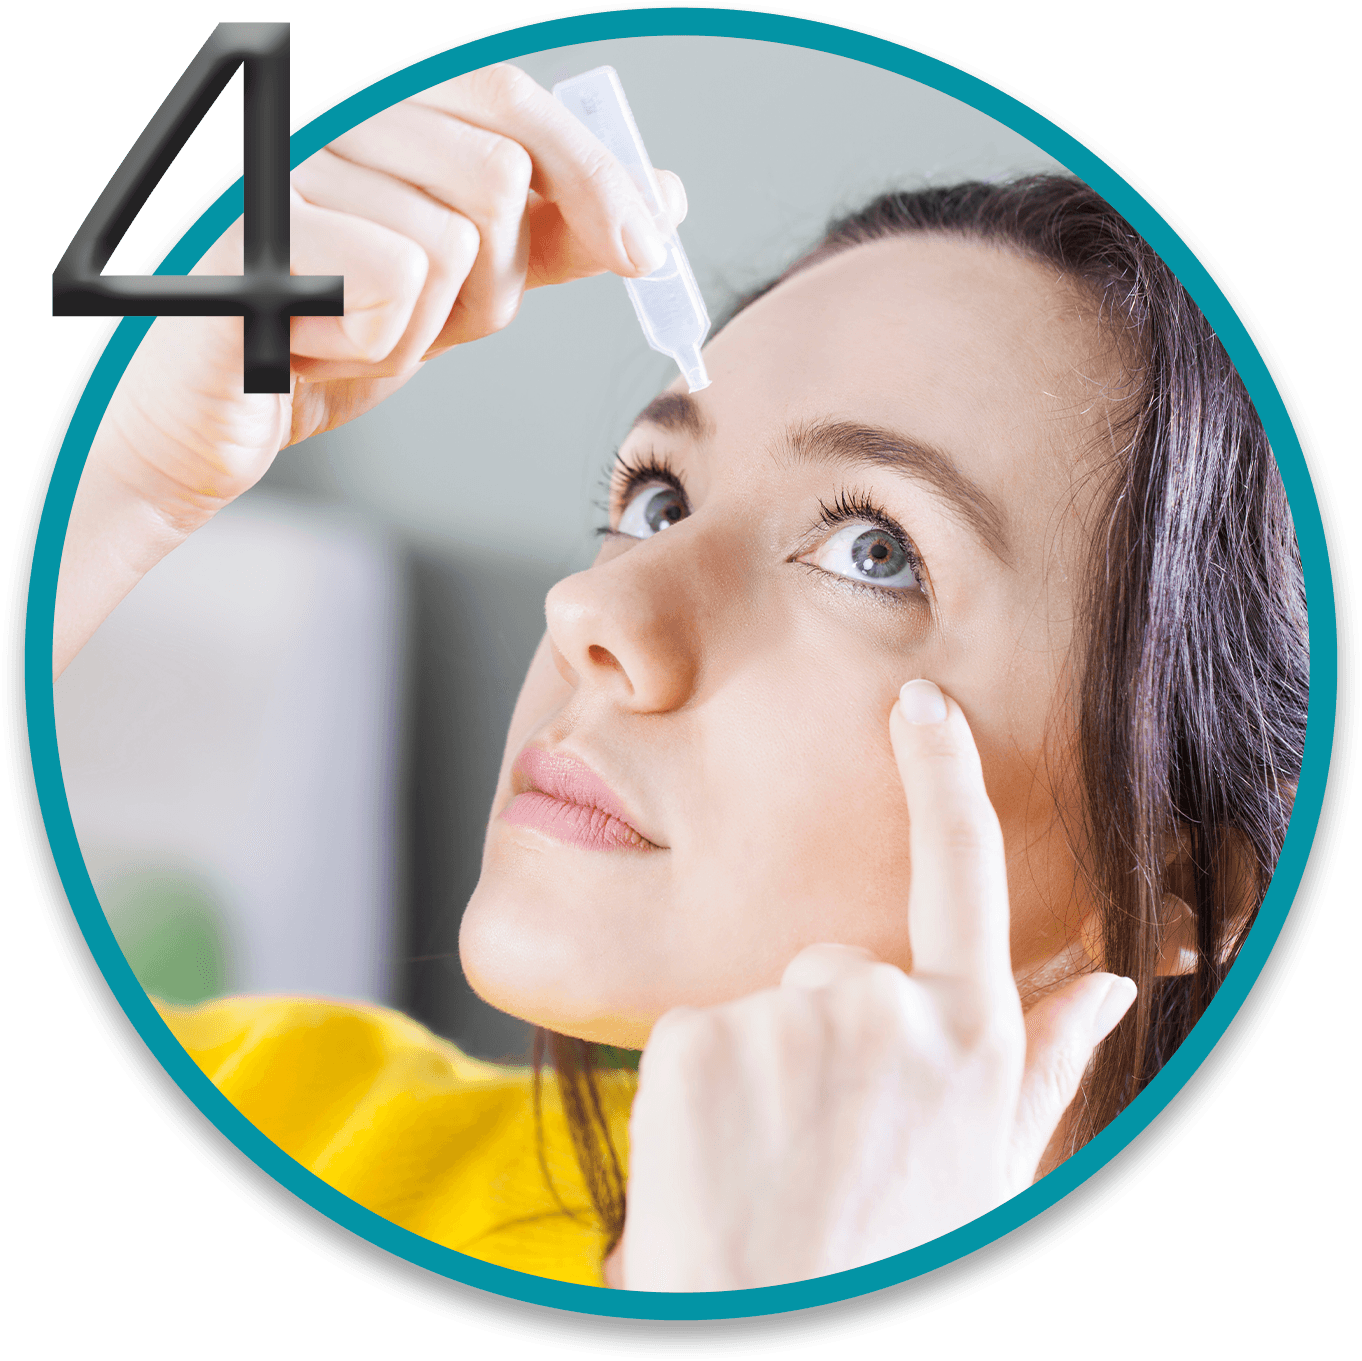 Imagen de una mujer que se está poniendo gotas lubricantes para mantener una visión cómoda con sus lentes de contacto. Dentro de la imagen tenemos el número 4.